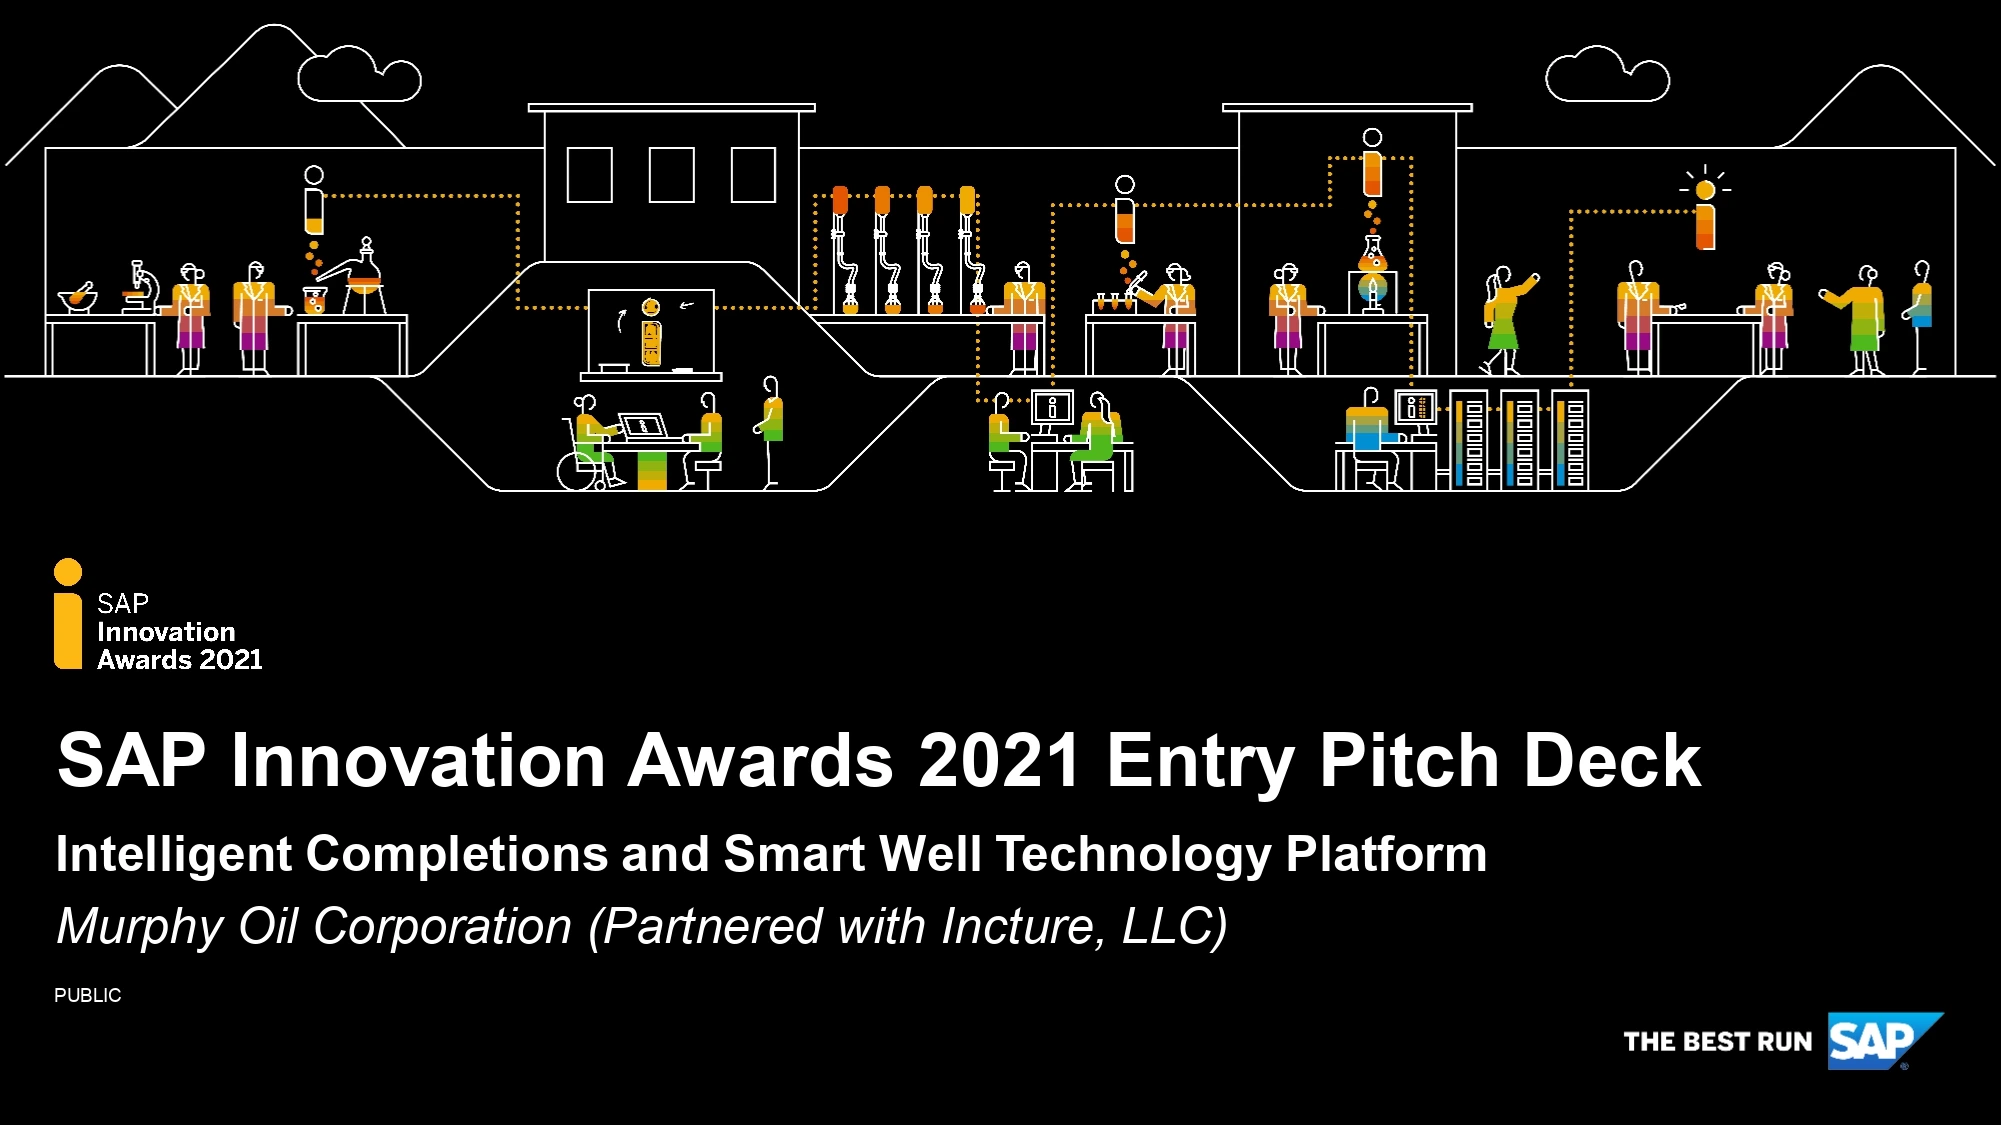 SAP Innovation Awards 2021 Entry Pitch Deck Murphy Oil Corporation